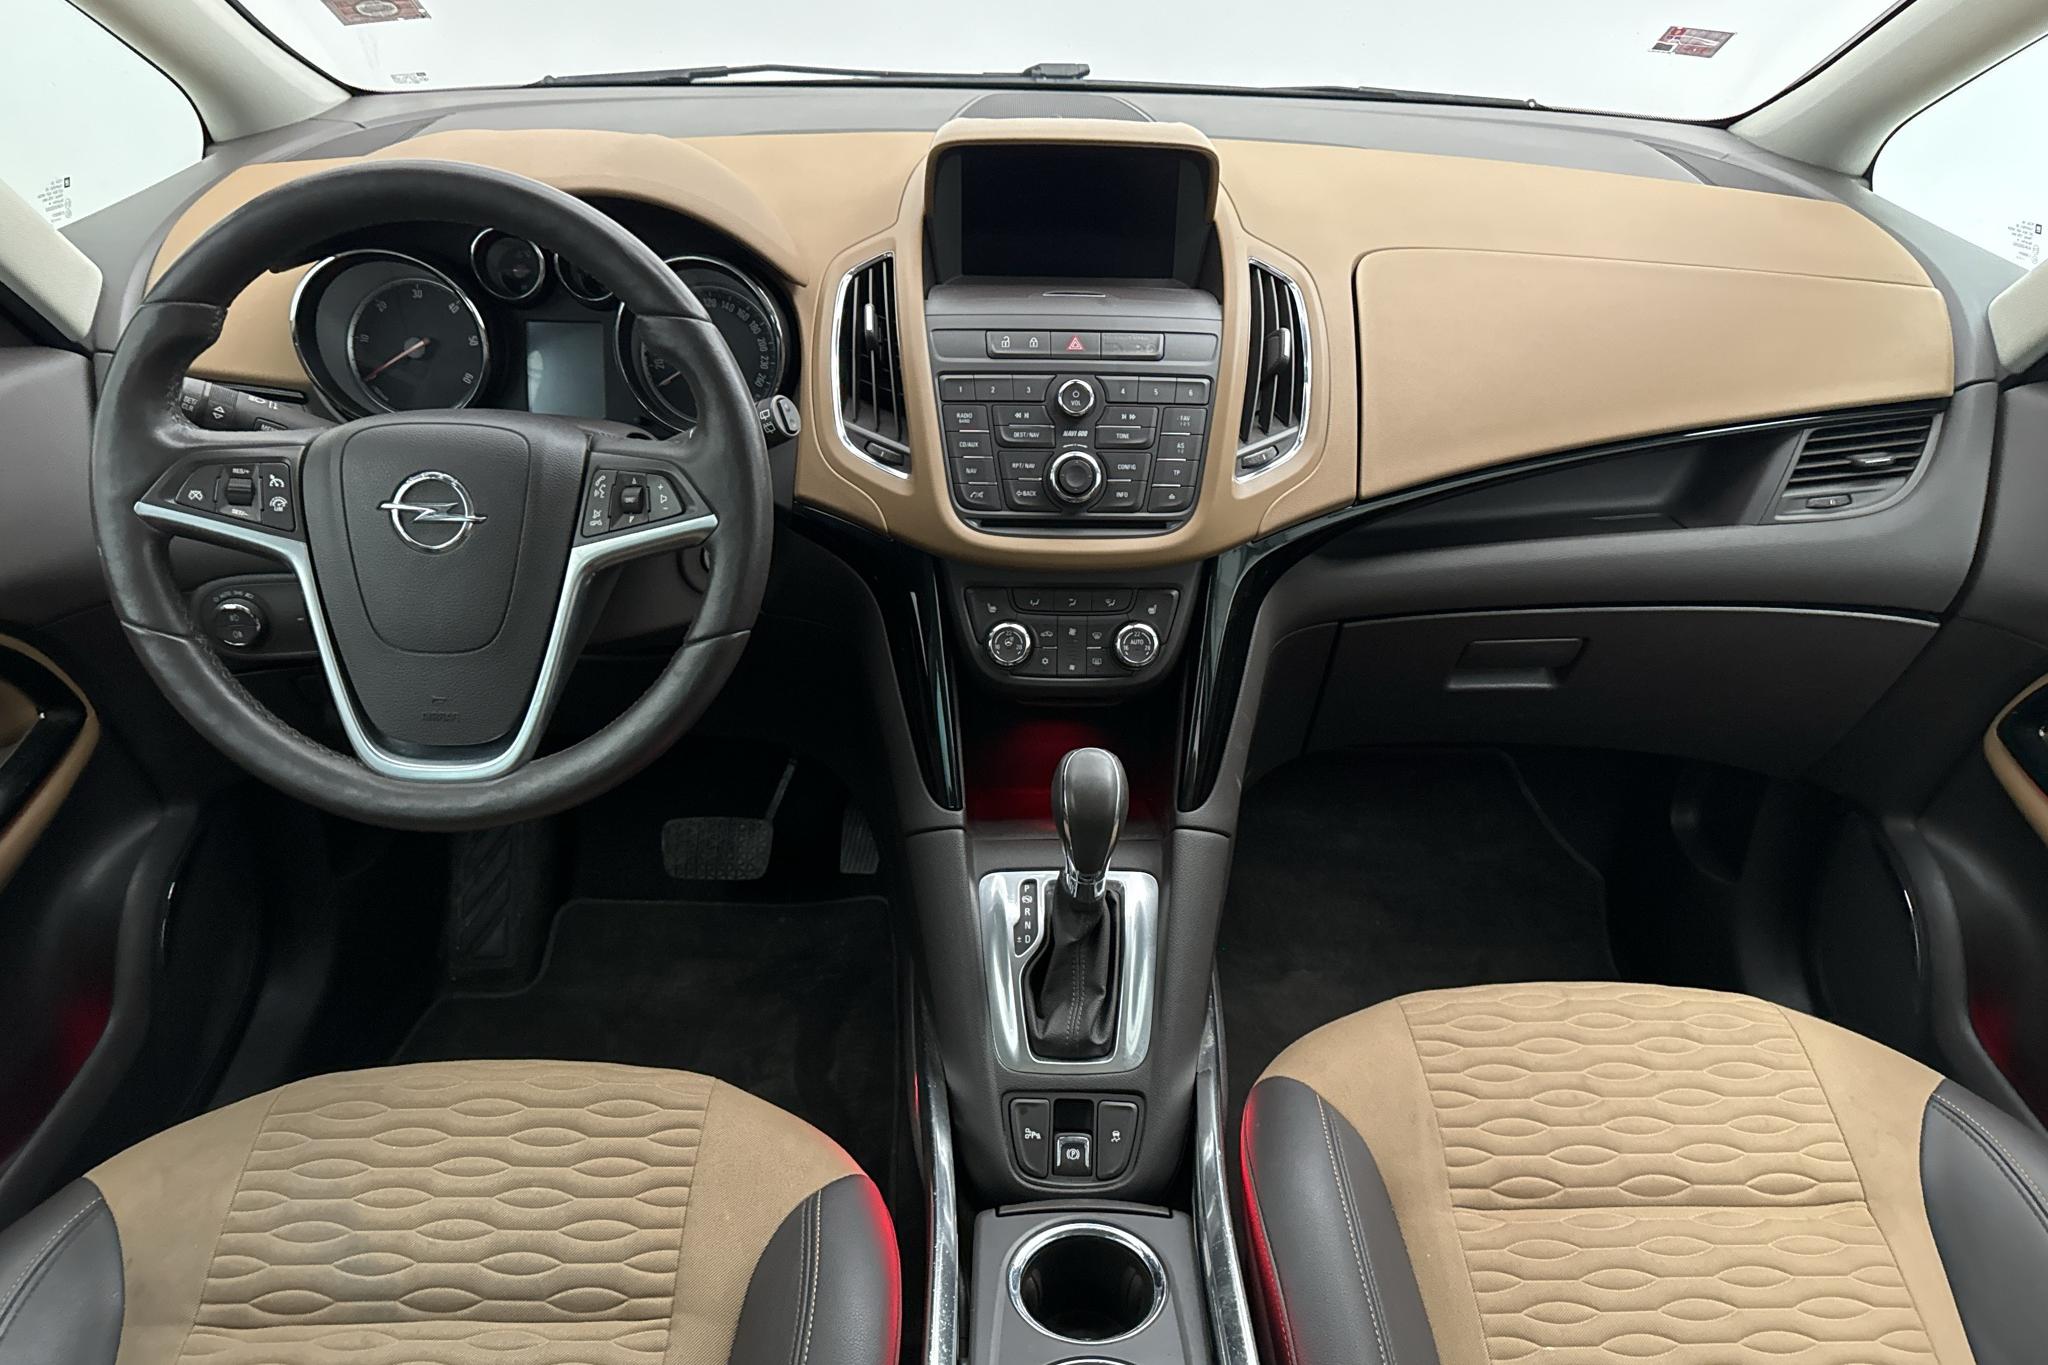 Opel Zafira Tourer 2.0 ECOTEC (165hk) - 132 040 km - Automatyczna - brązowy - 2014